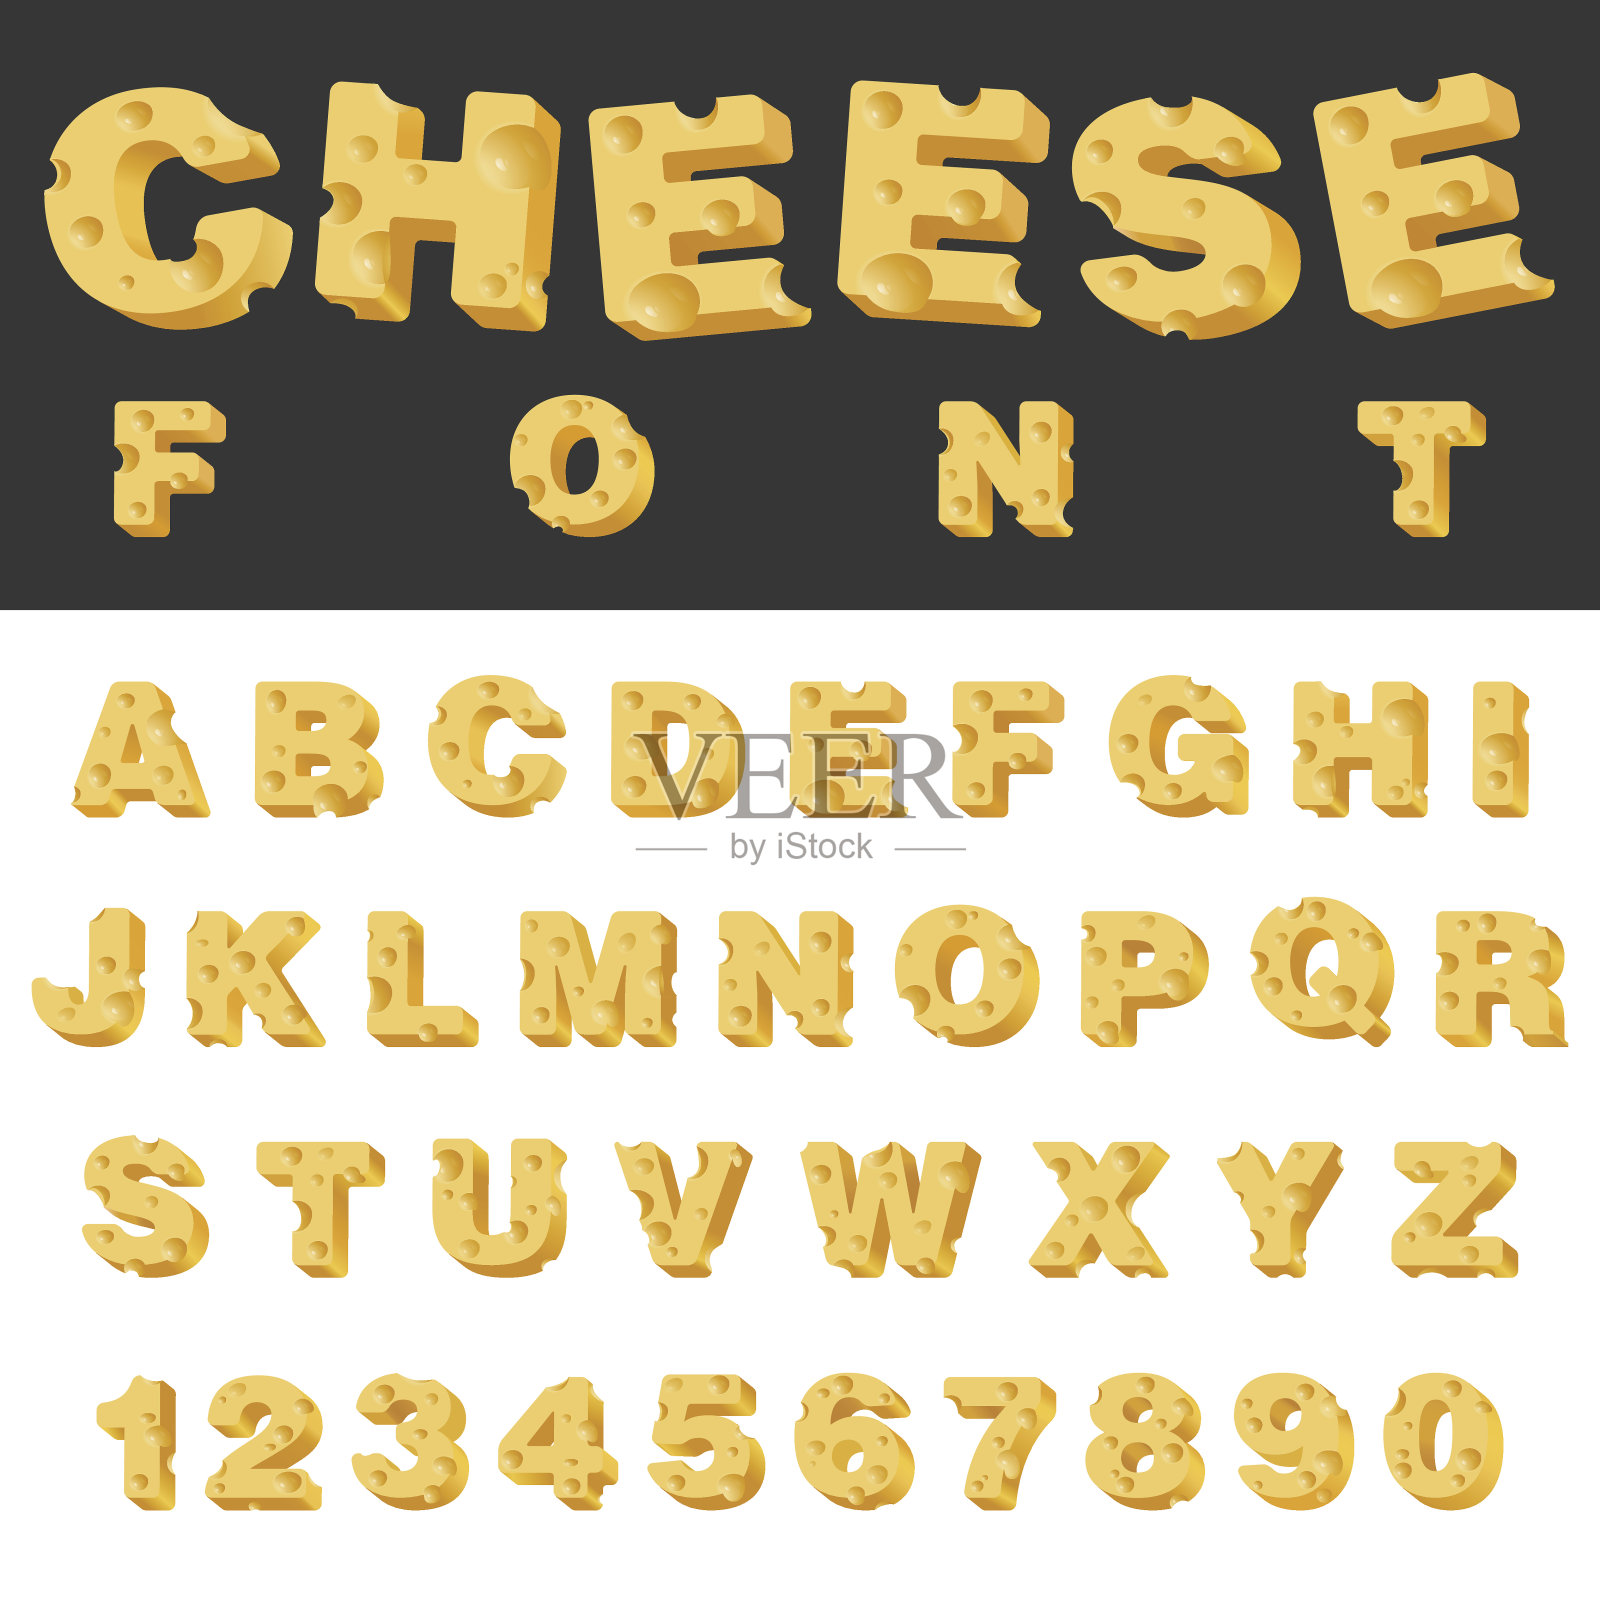 奶酪切片孤立的字母和数字拉丁字体。美食小吃排字字母集合。设计元素图片